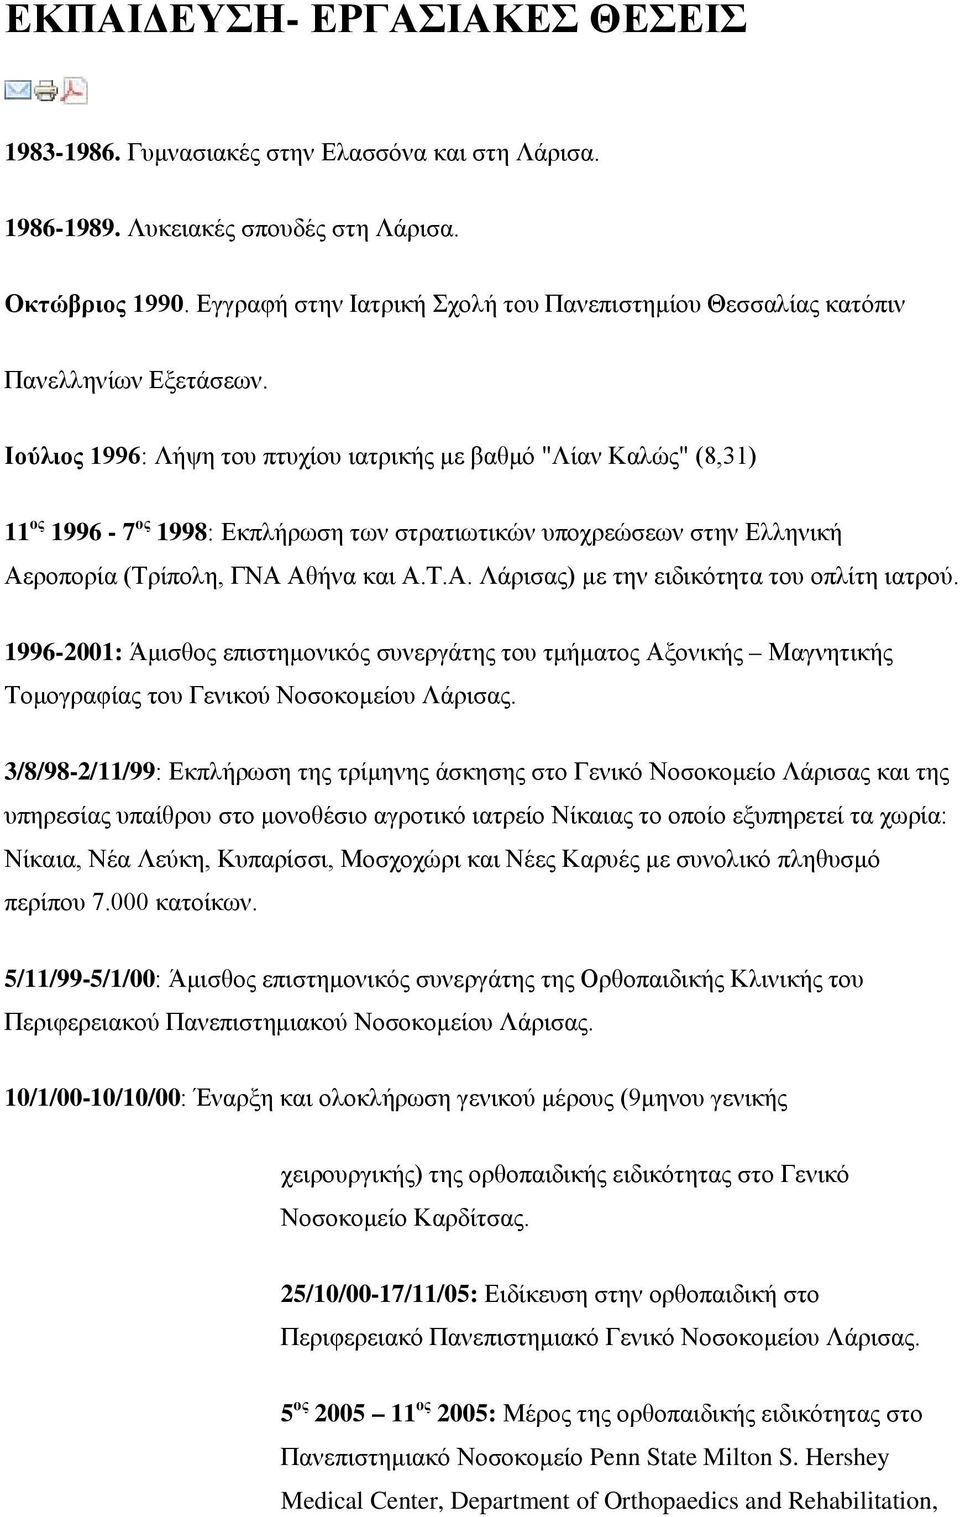 Ιούλιος 1996: Λήψη του πτυχίου ιατρικής με βαθμό "Λίαν Καλώς" (8,31) 11 ος 1996-7 ος 1998: Εκπλήρωση των στρατιωτικών υποχρεώσεων στην Ελληνική Αεροπορία (Τρίπολη, ΓΝΑ Αθήνα και Α.Τ.Α. Λάρισας) με την ειδικότητα του οπλίτη ιατρού.